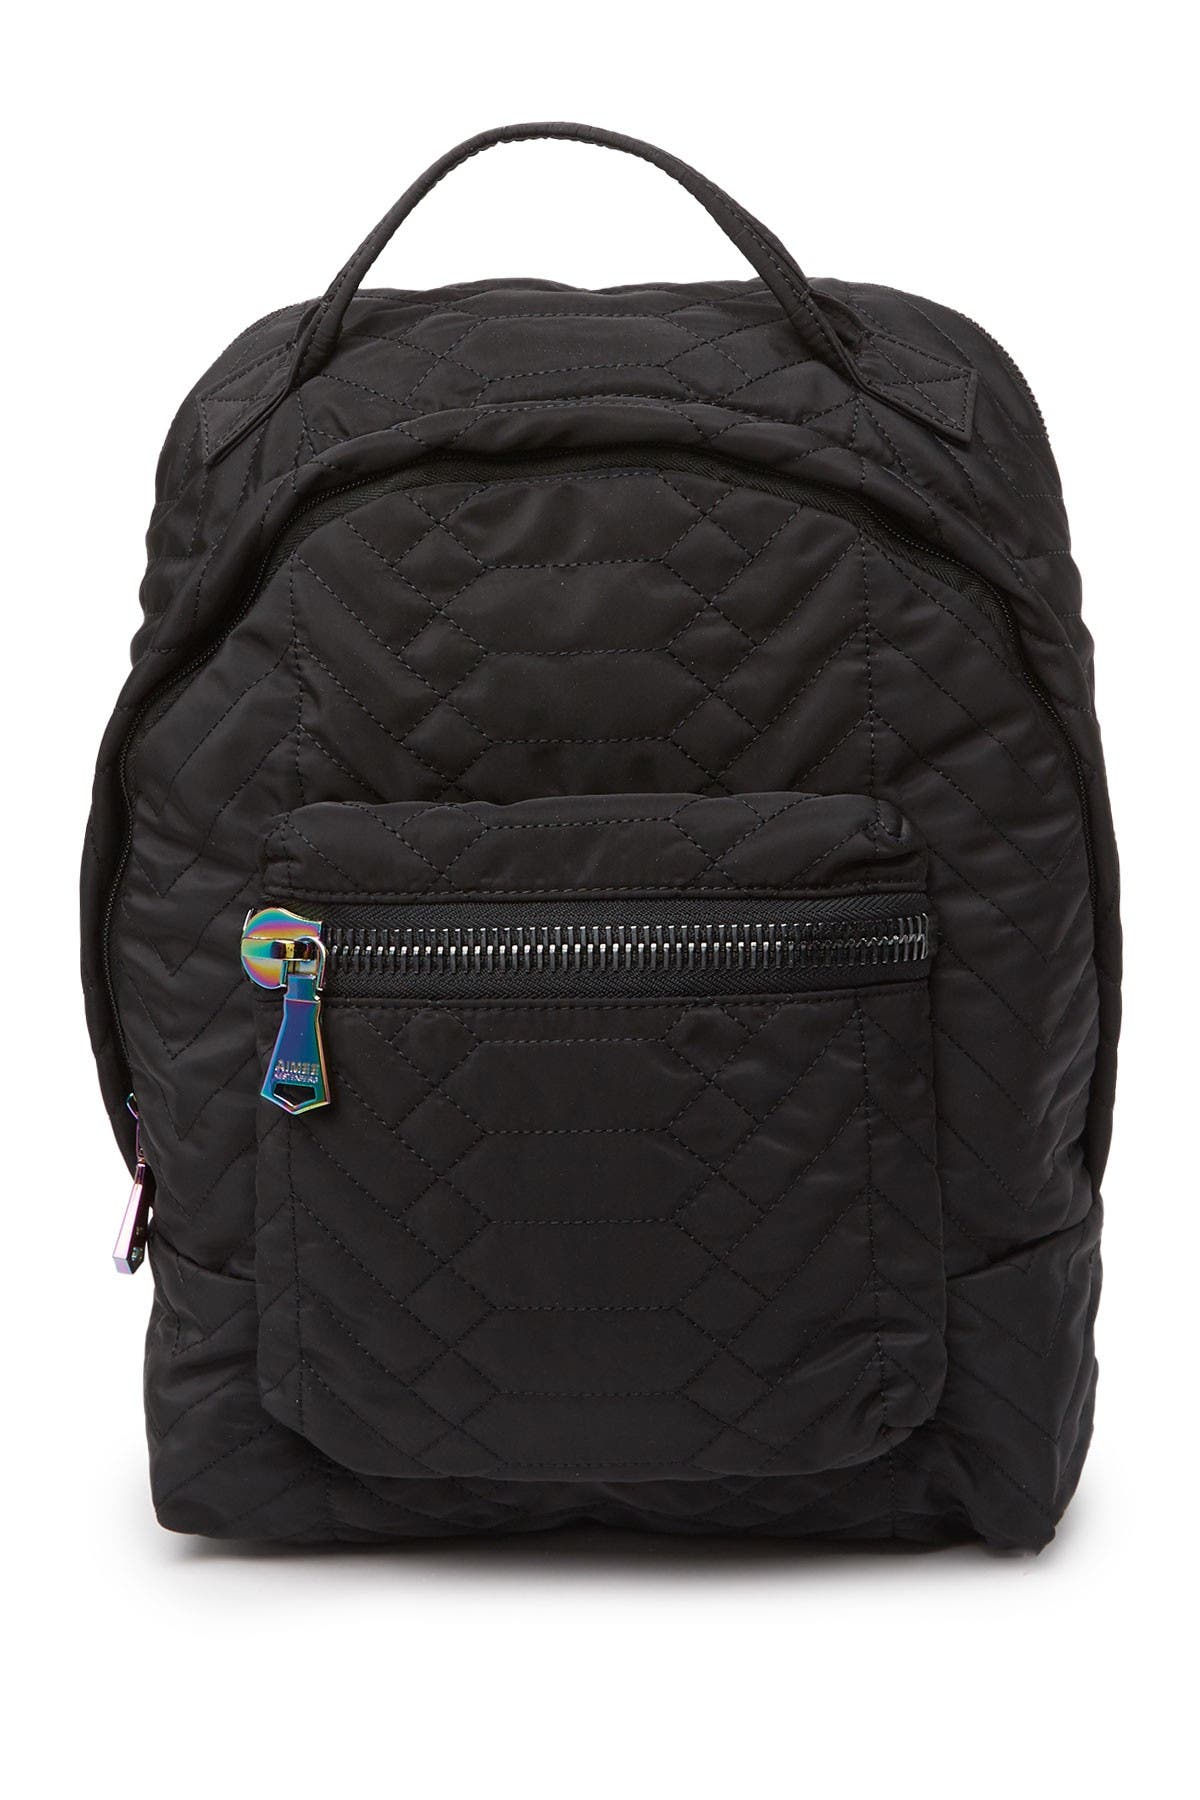 Aimee Kestenberg Got Your Back Backpack In Black Nylon Quilt